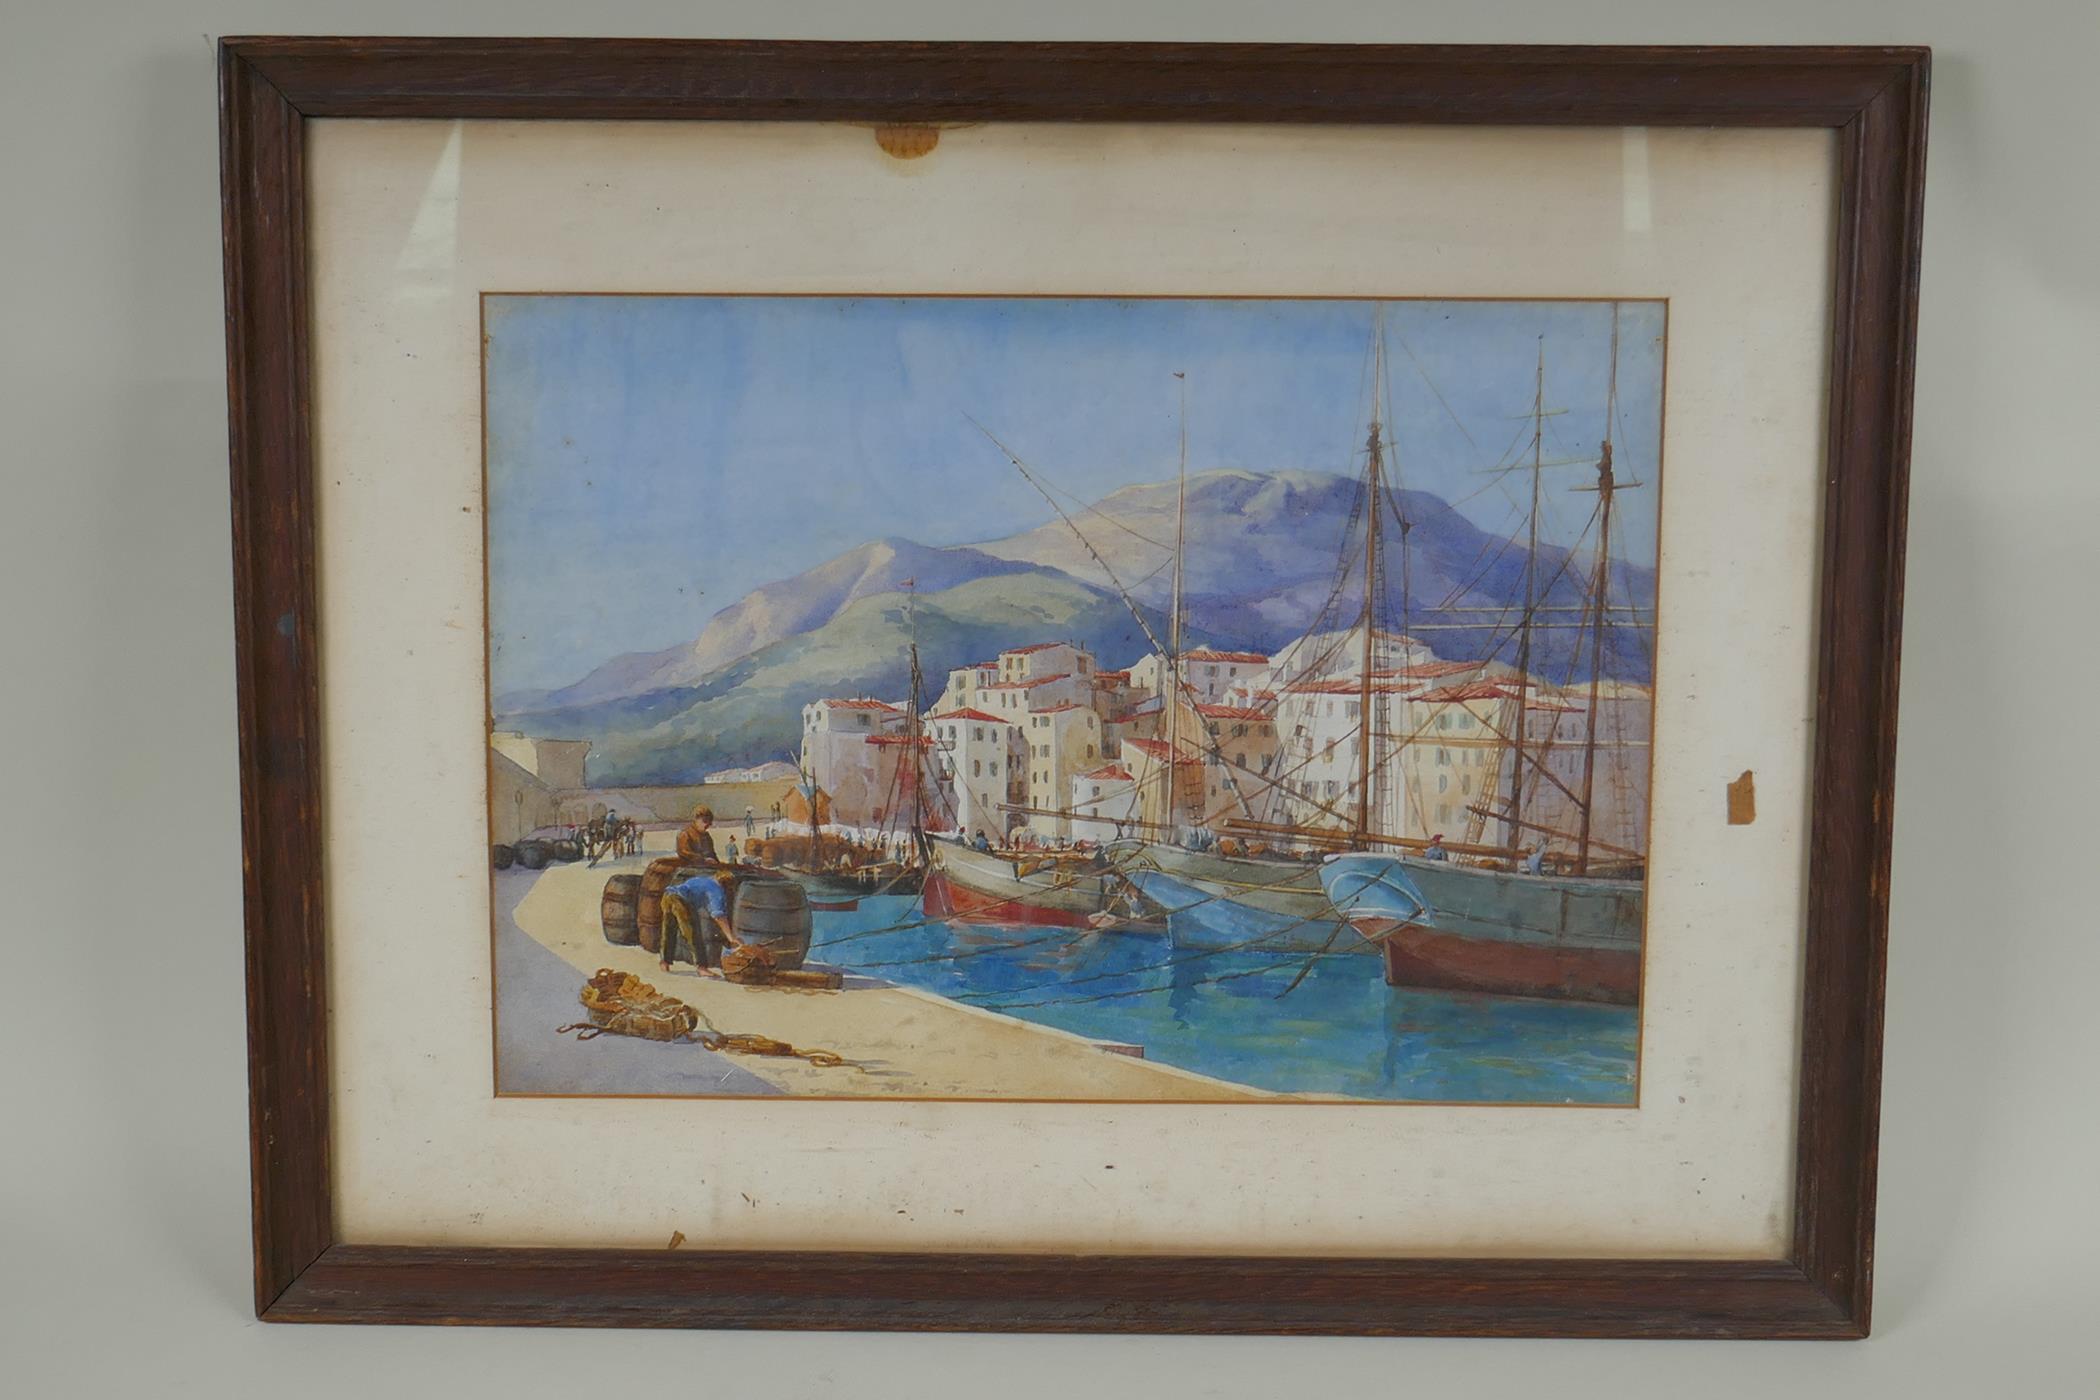 A C19th Italian port scene, watercolour, 38 x 26cm - Image 2 of 2